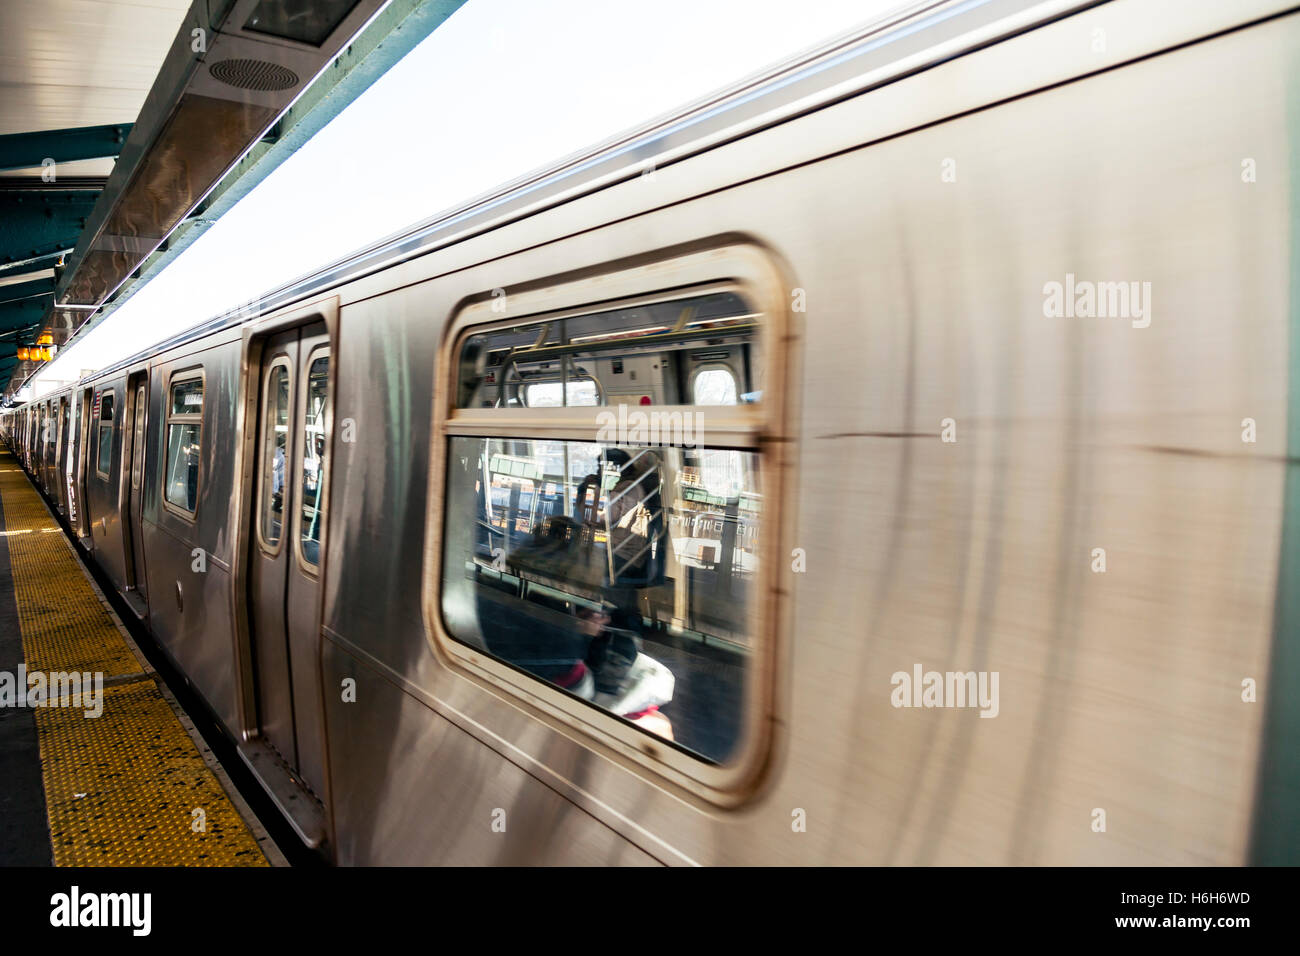 J stazione metropolitana che arrivano alla stazione di New York. Foto Stock